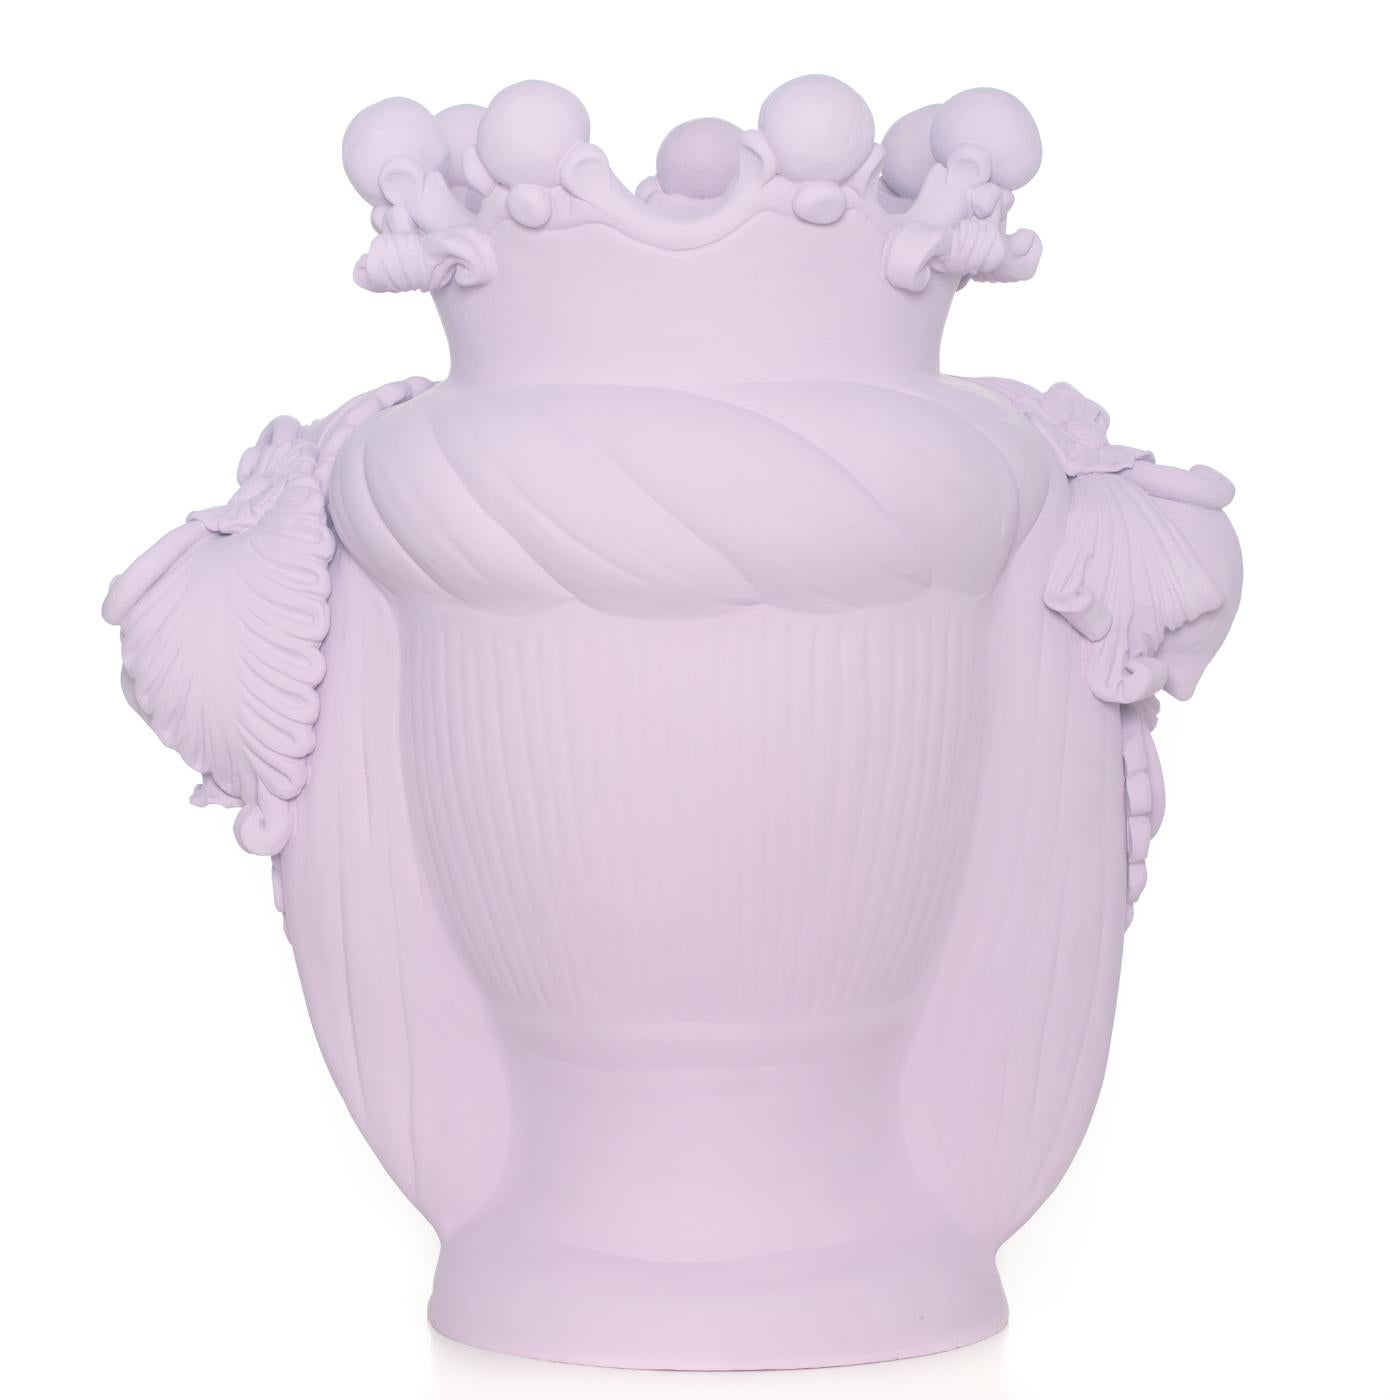 Ce vase anthropomorphe est entièrement réalisé à la main et peint dans une teinte monochrome mate rose antique, riche en pigments naturels et en liants résineux qui donnent une profondeur de couleur intense. Seuls les yeux sont glacés afin qu'ils